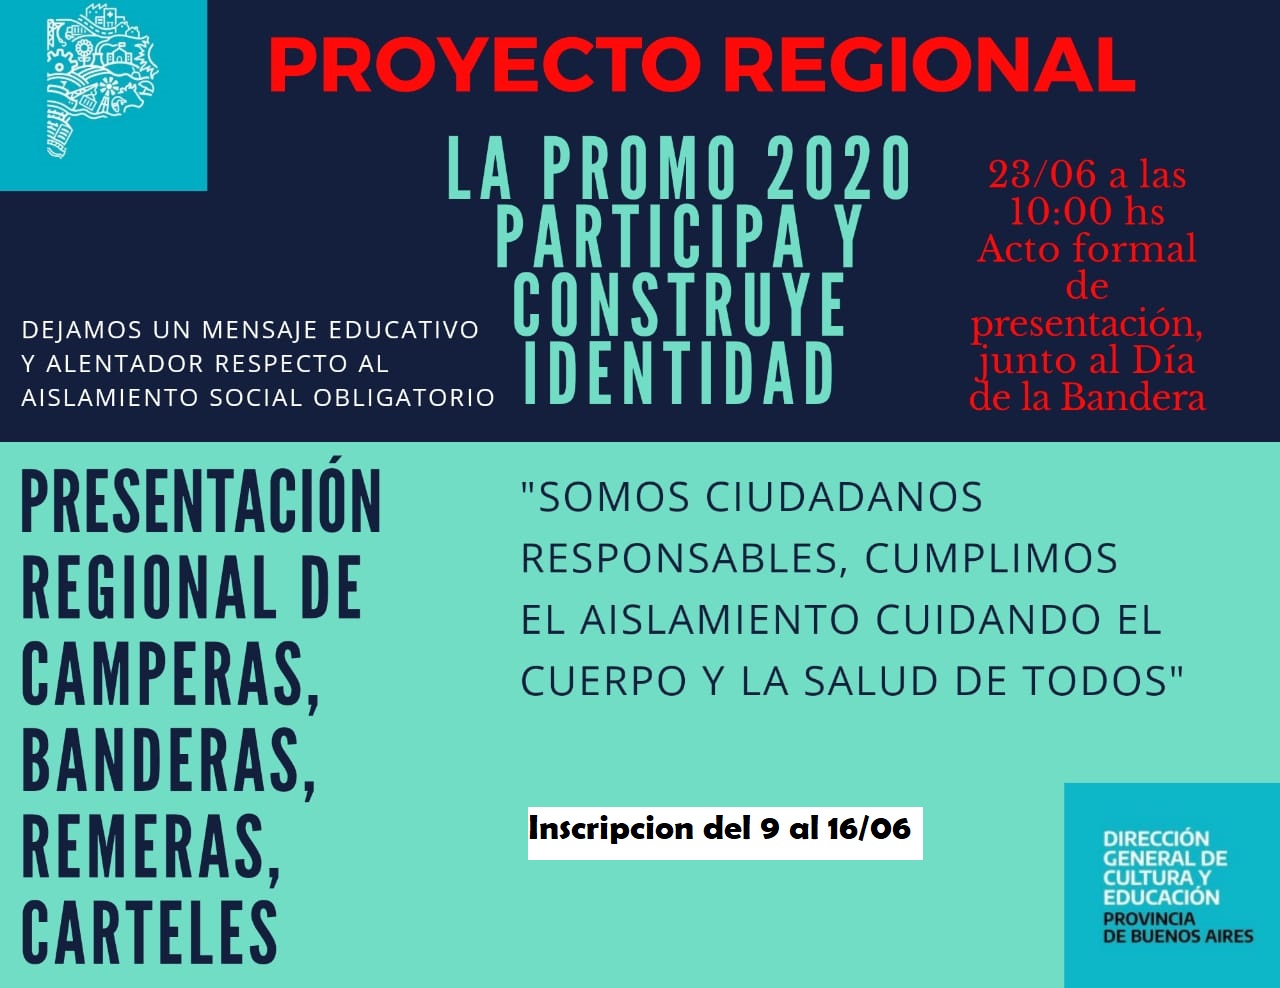 Proyecto regional "Promo 2020"